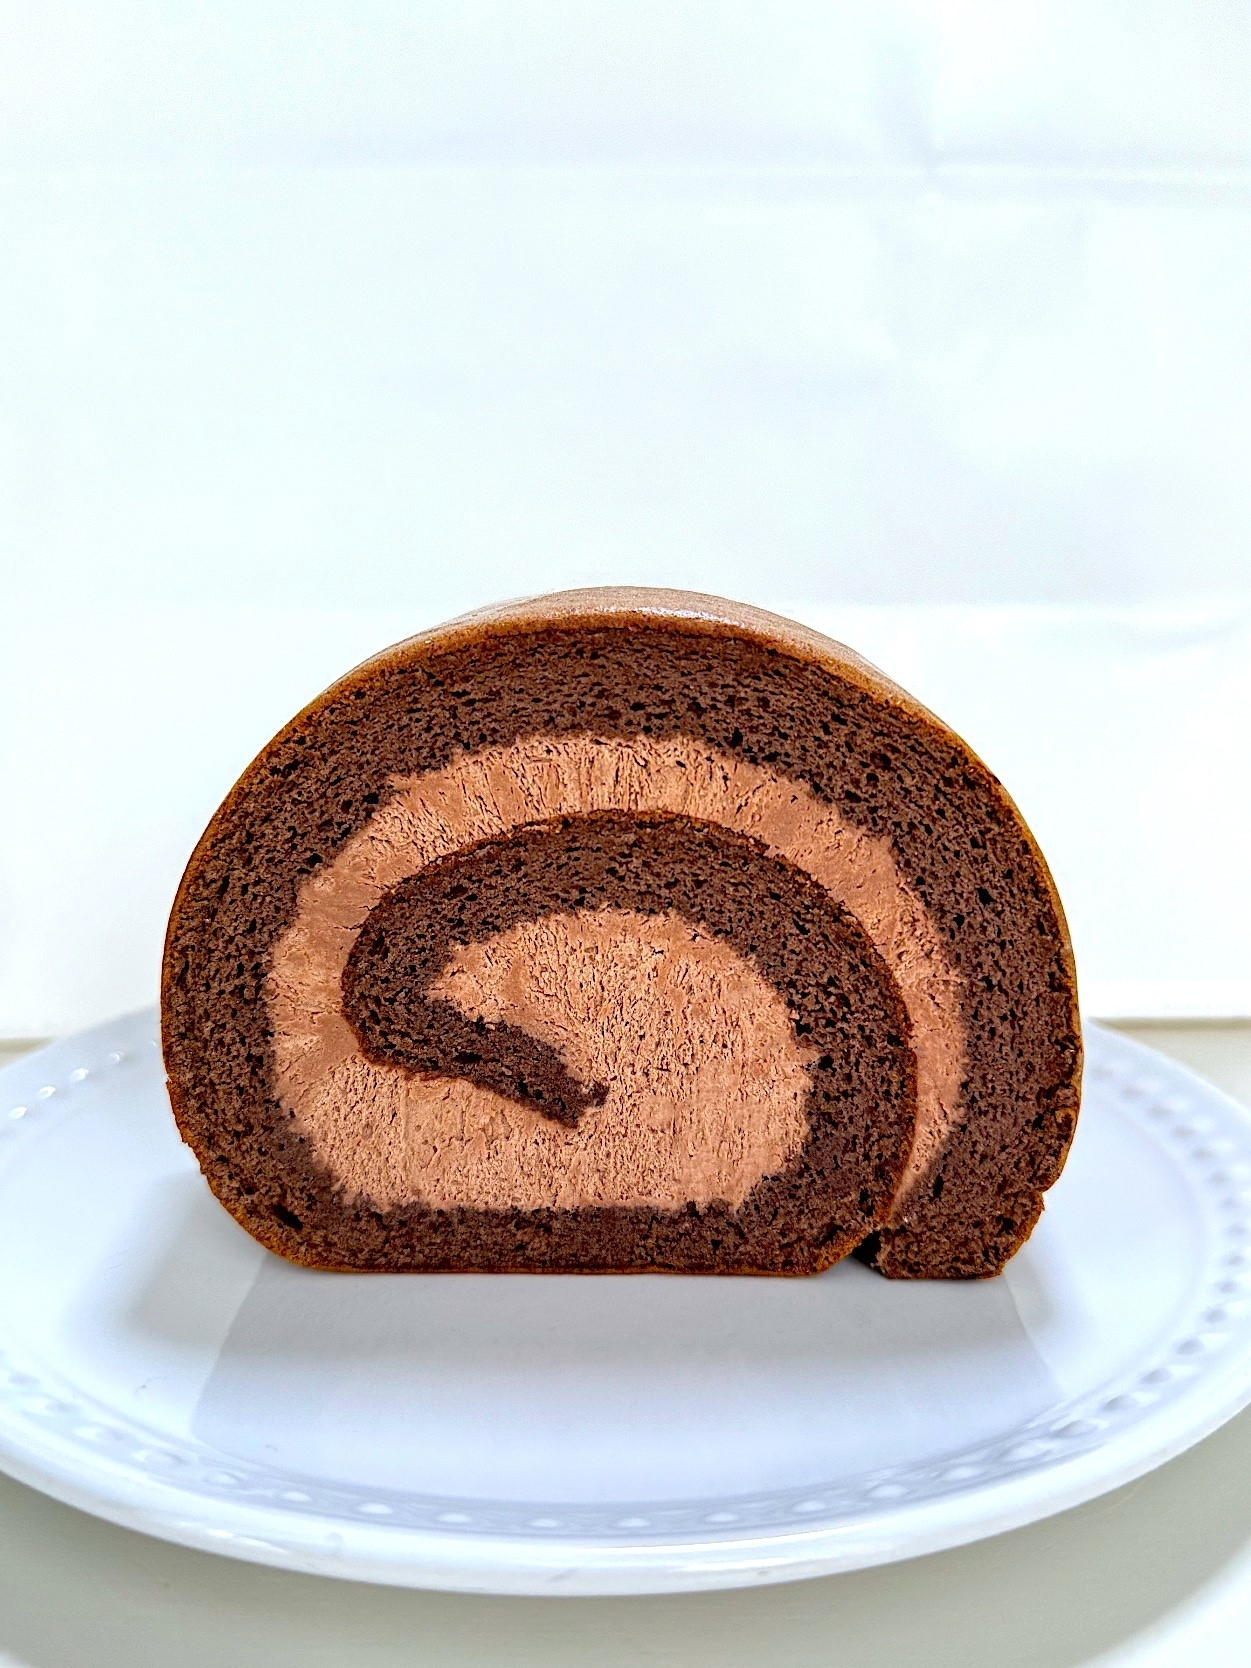 星乃珈琲店のおすすめのメニュー「チョコレートロールケーキ」